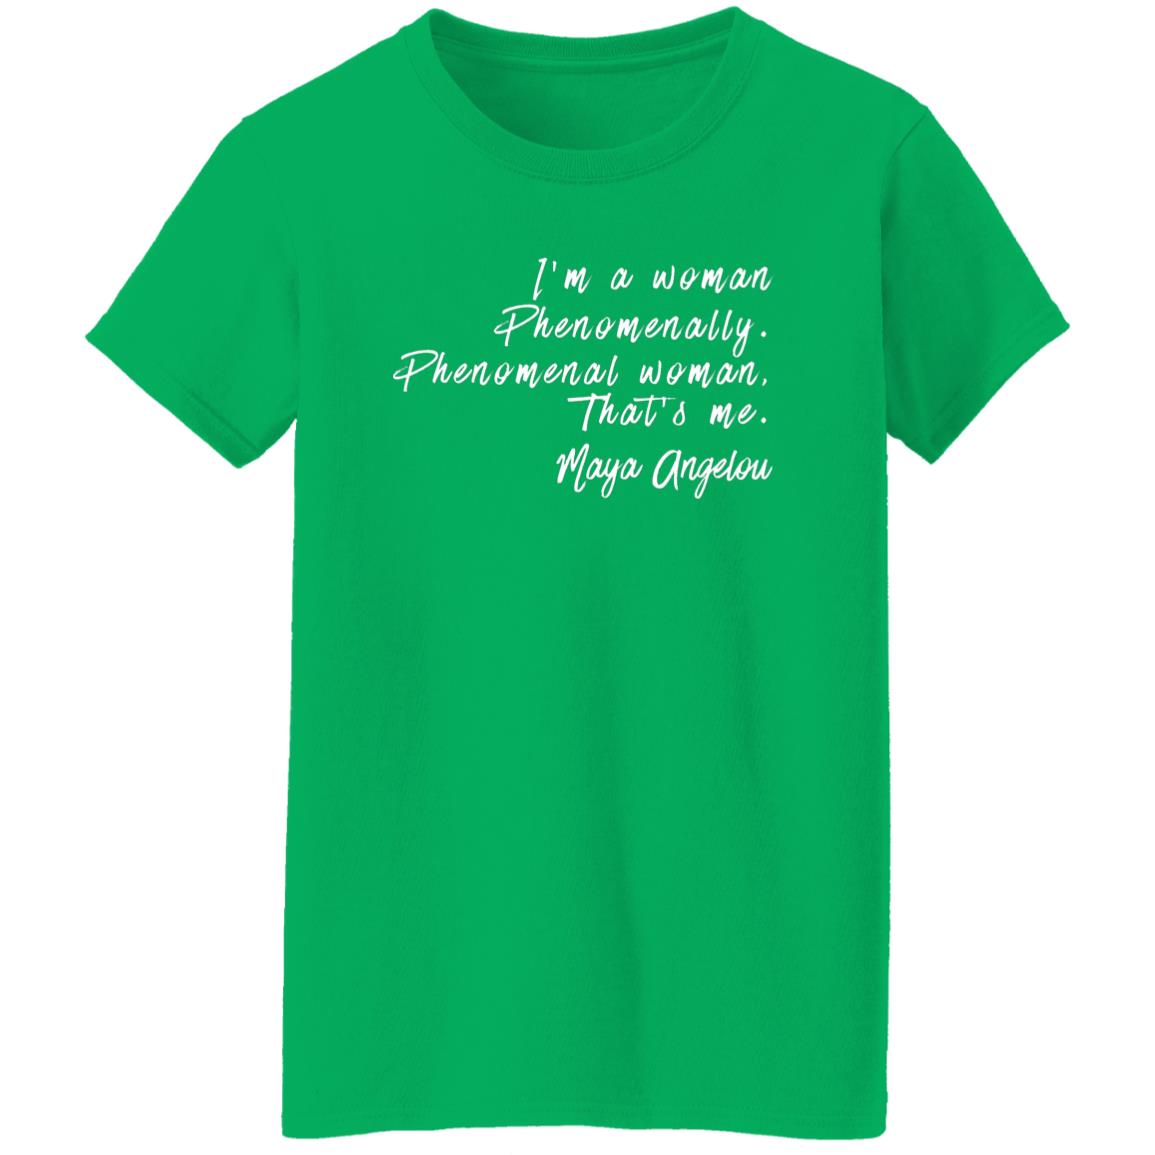 Maya Angelou Phenomenal Woman Quote T-Shirt